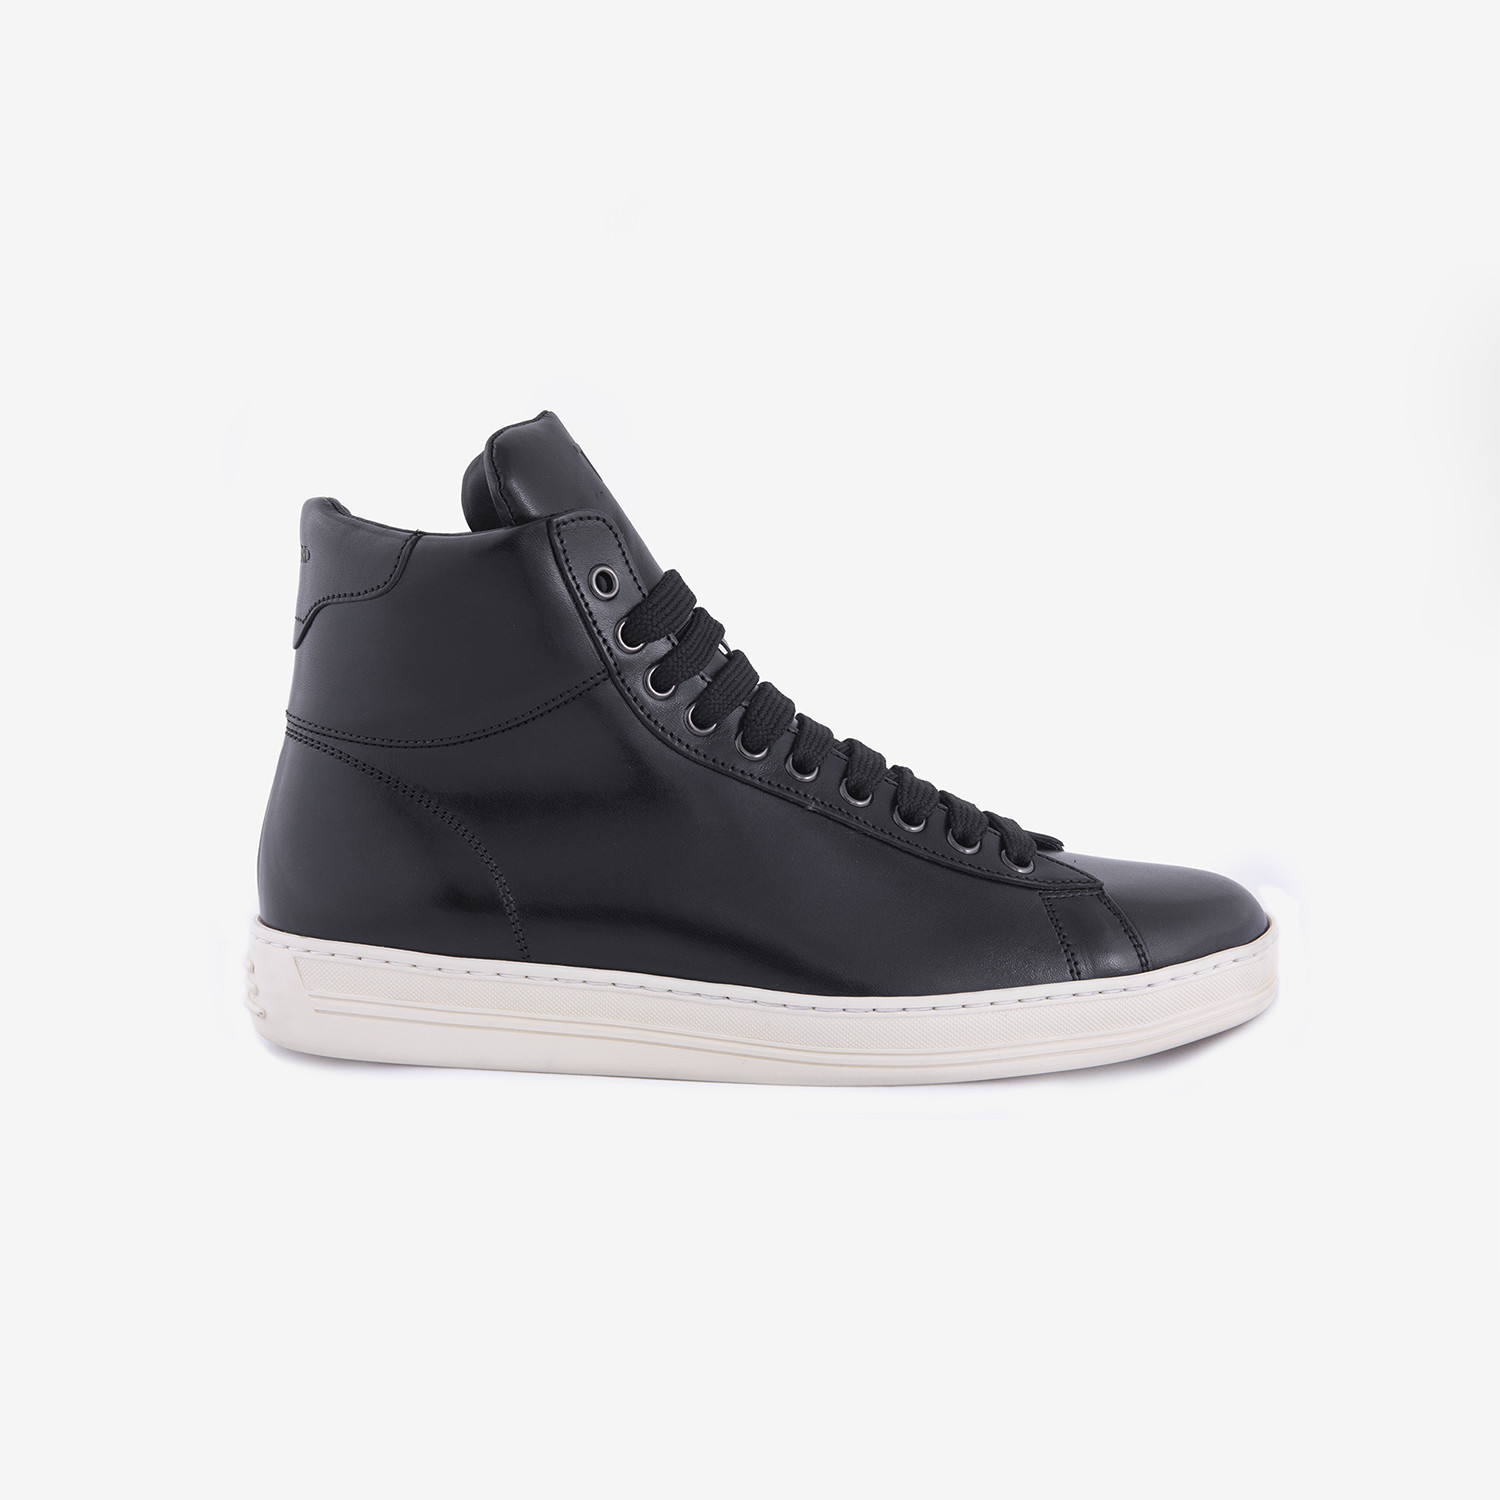 Tom Ford // High Top Sneakers // Black (US: 7.5) - Designer Footwear ...